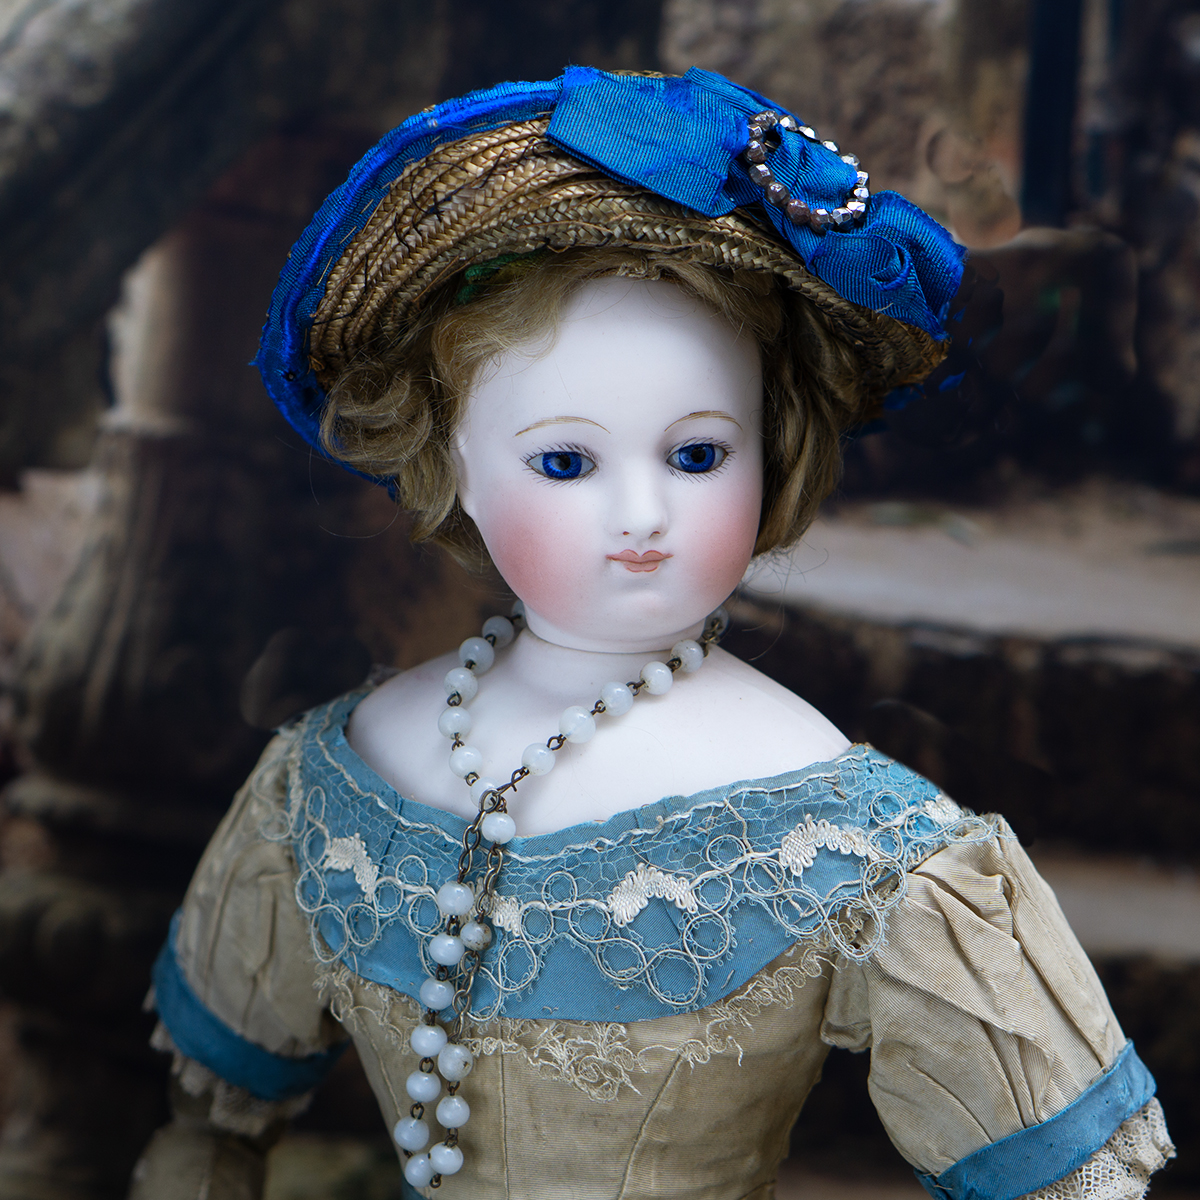 Barrois Fashion doll